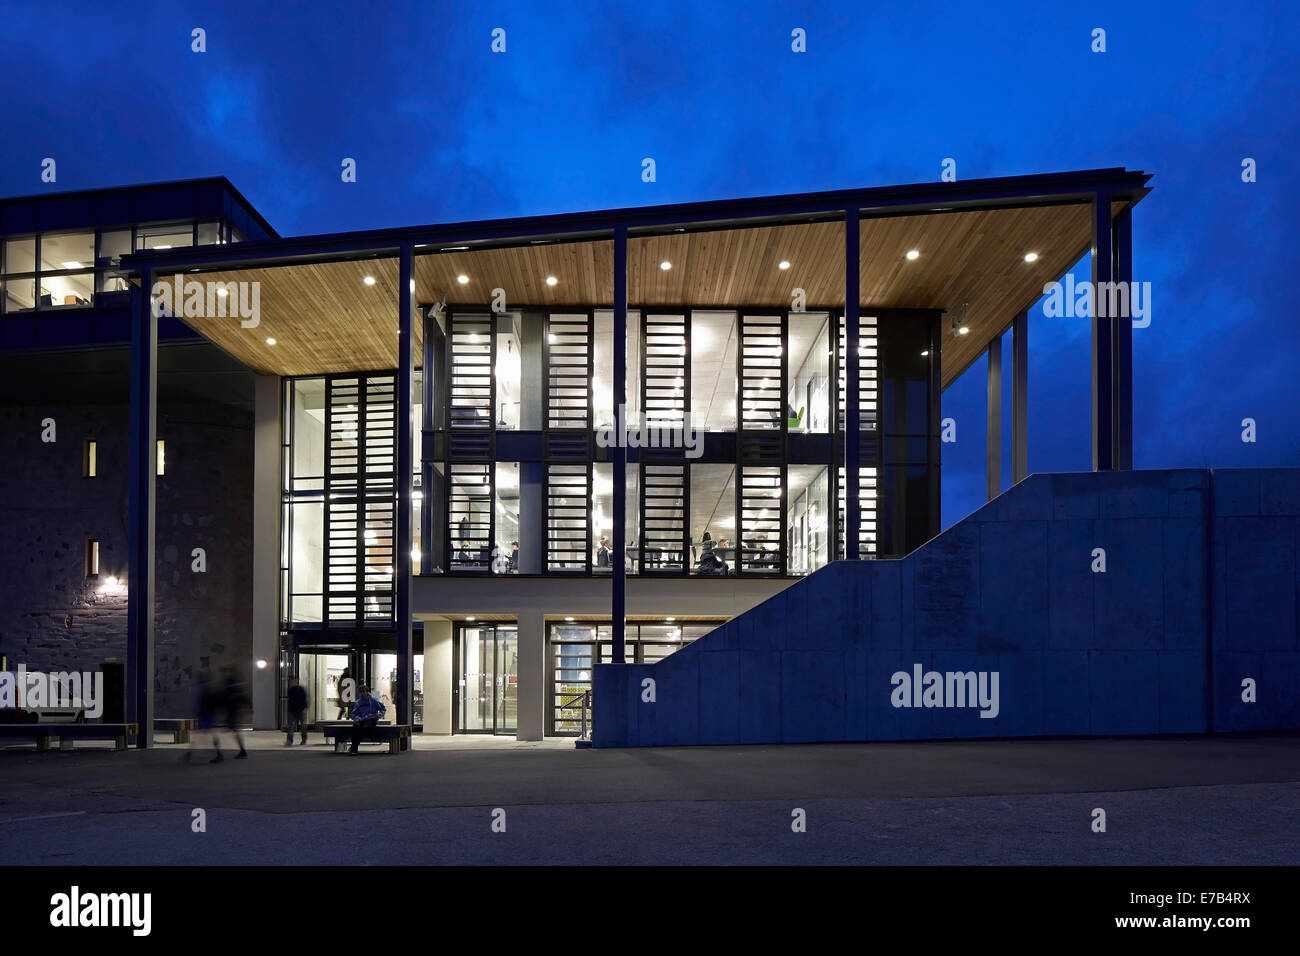 Lo scambio a Falmouth University, Penryn, Regno Unito. Architetto: Burwell Deakins architetti, 2013. Libreria a baldacchino entra Foto Stock